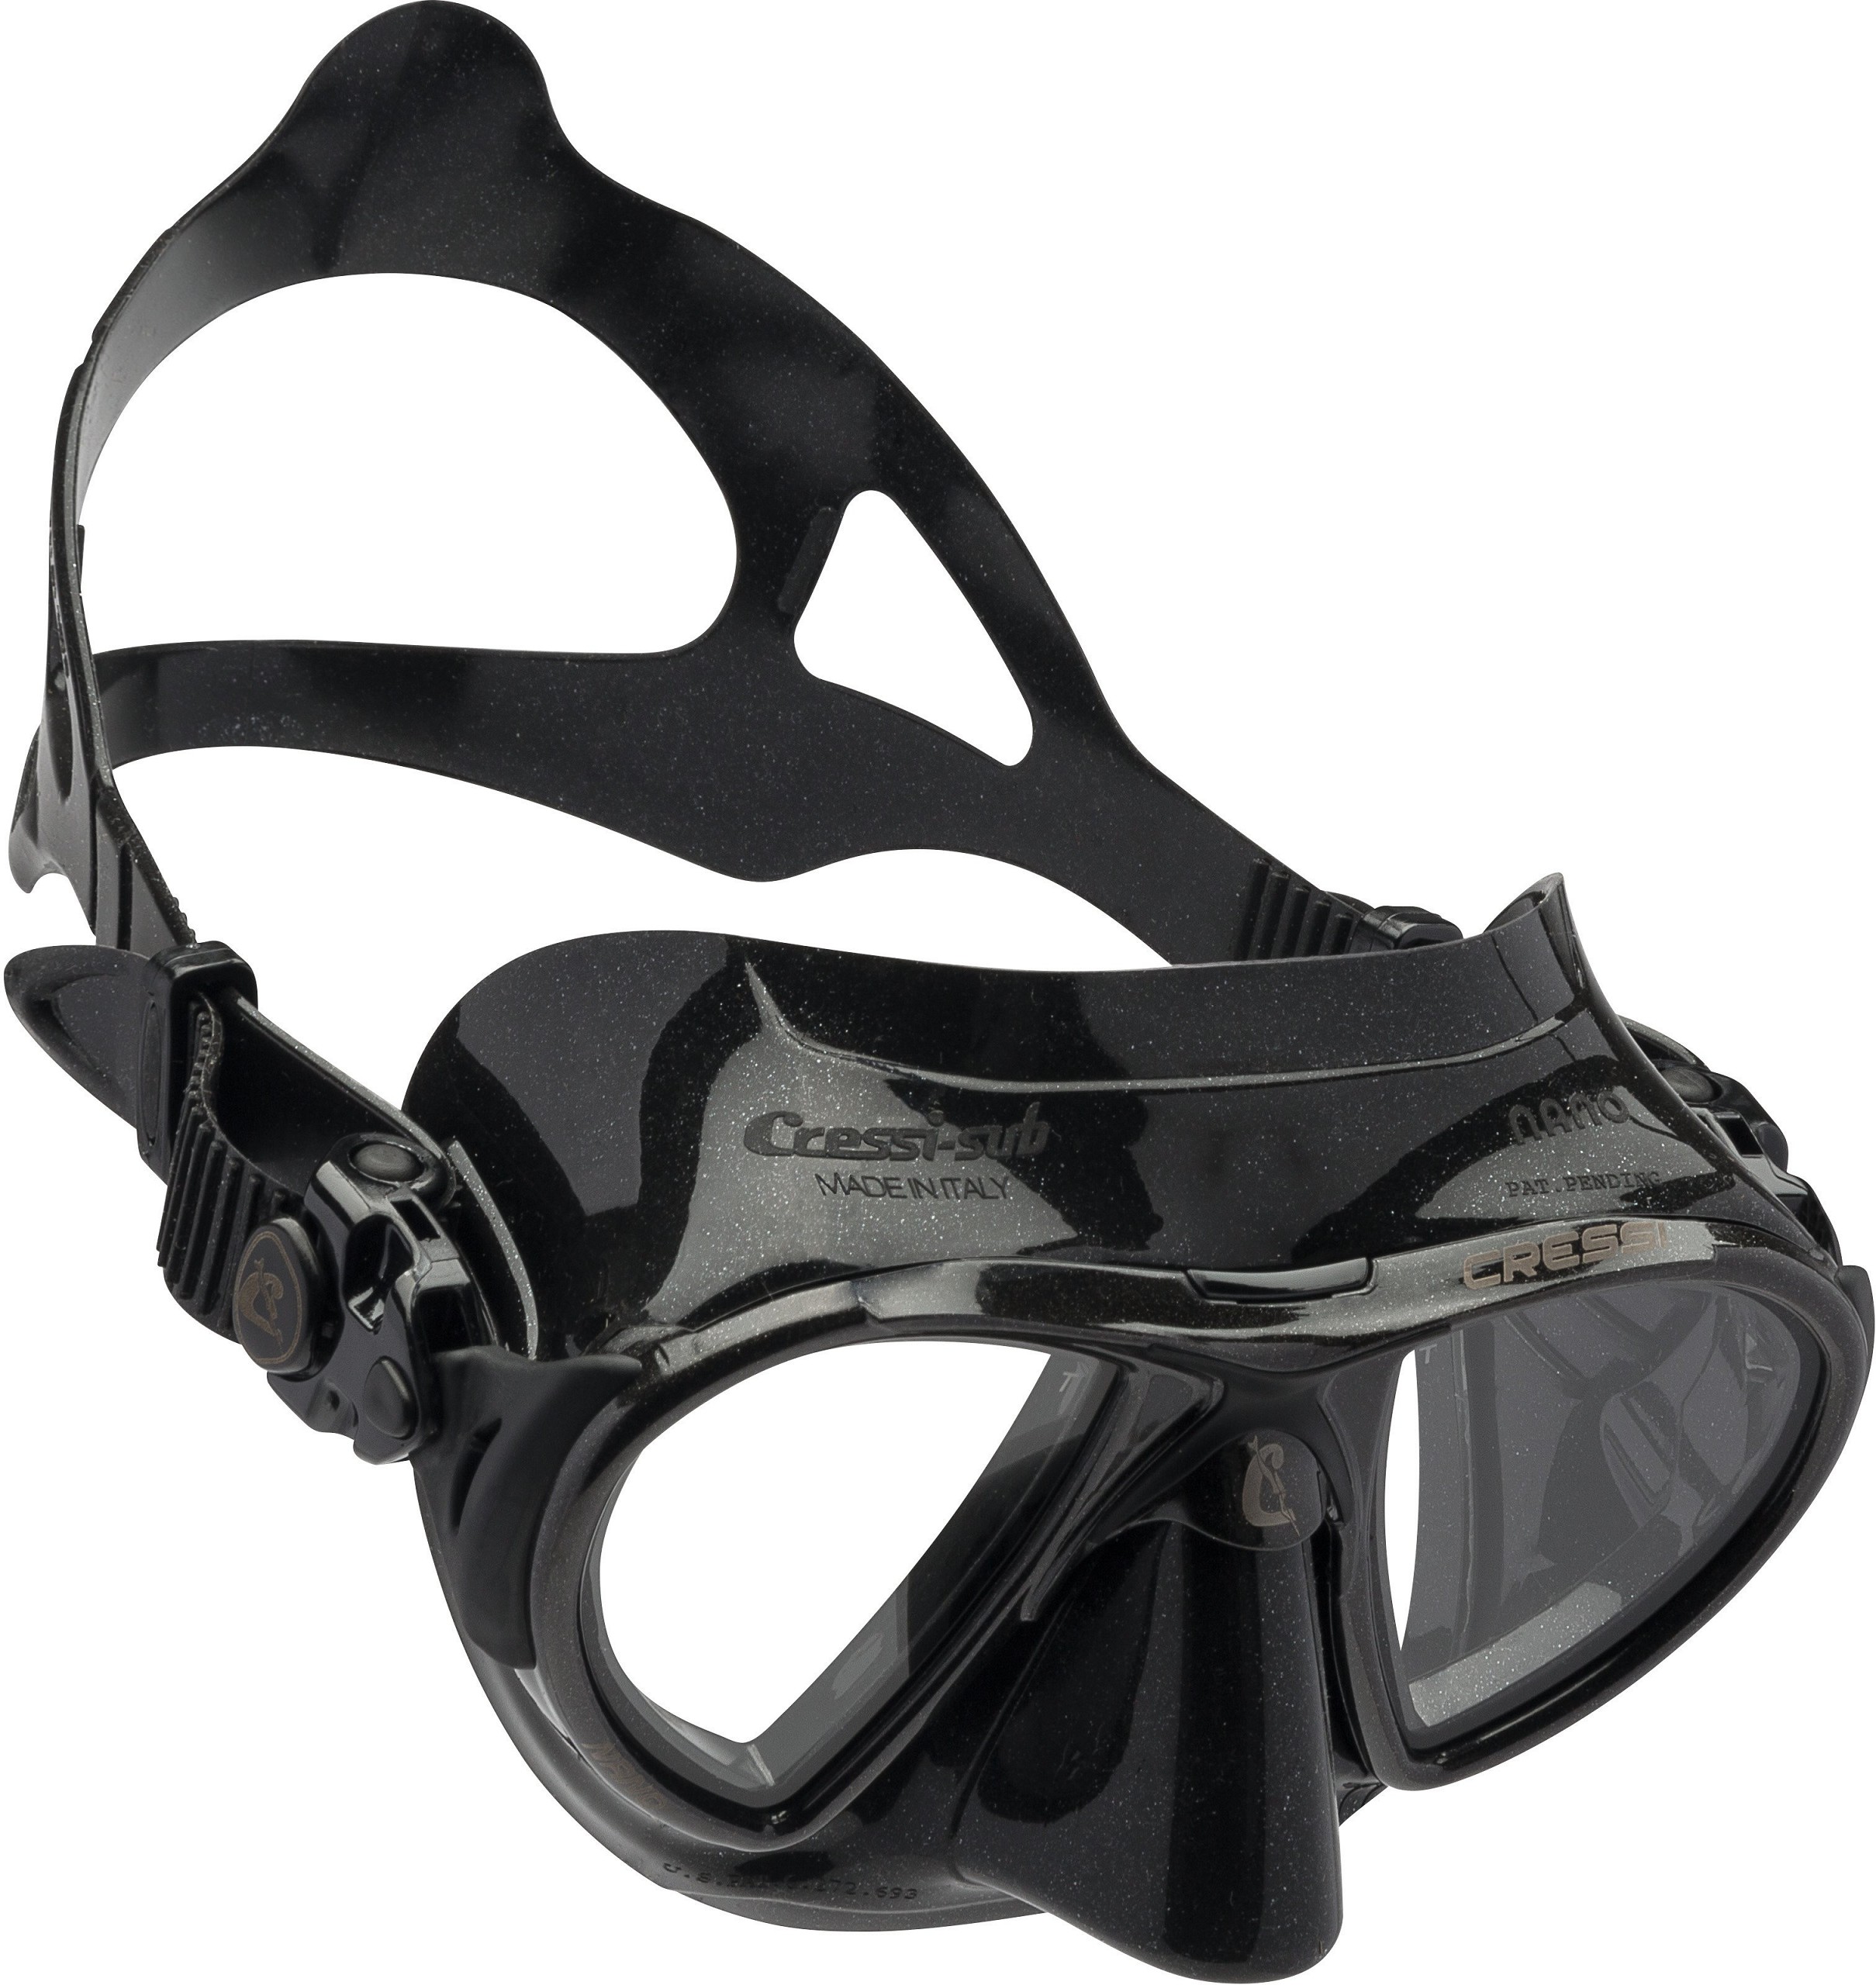 Cressi Nano Black Mask